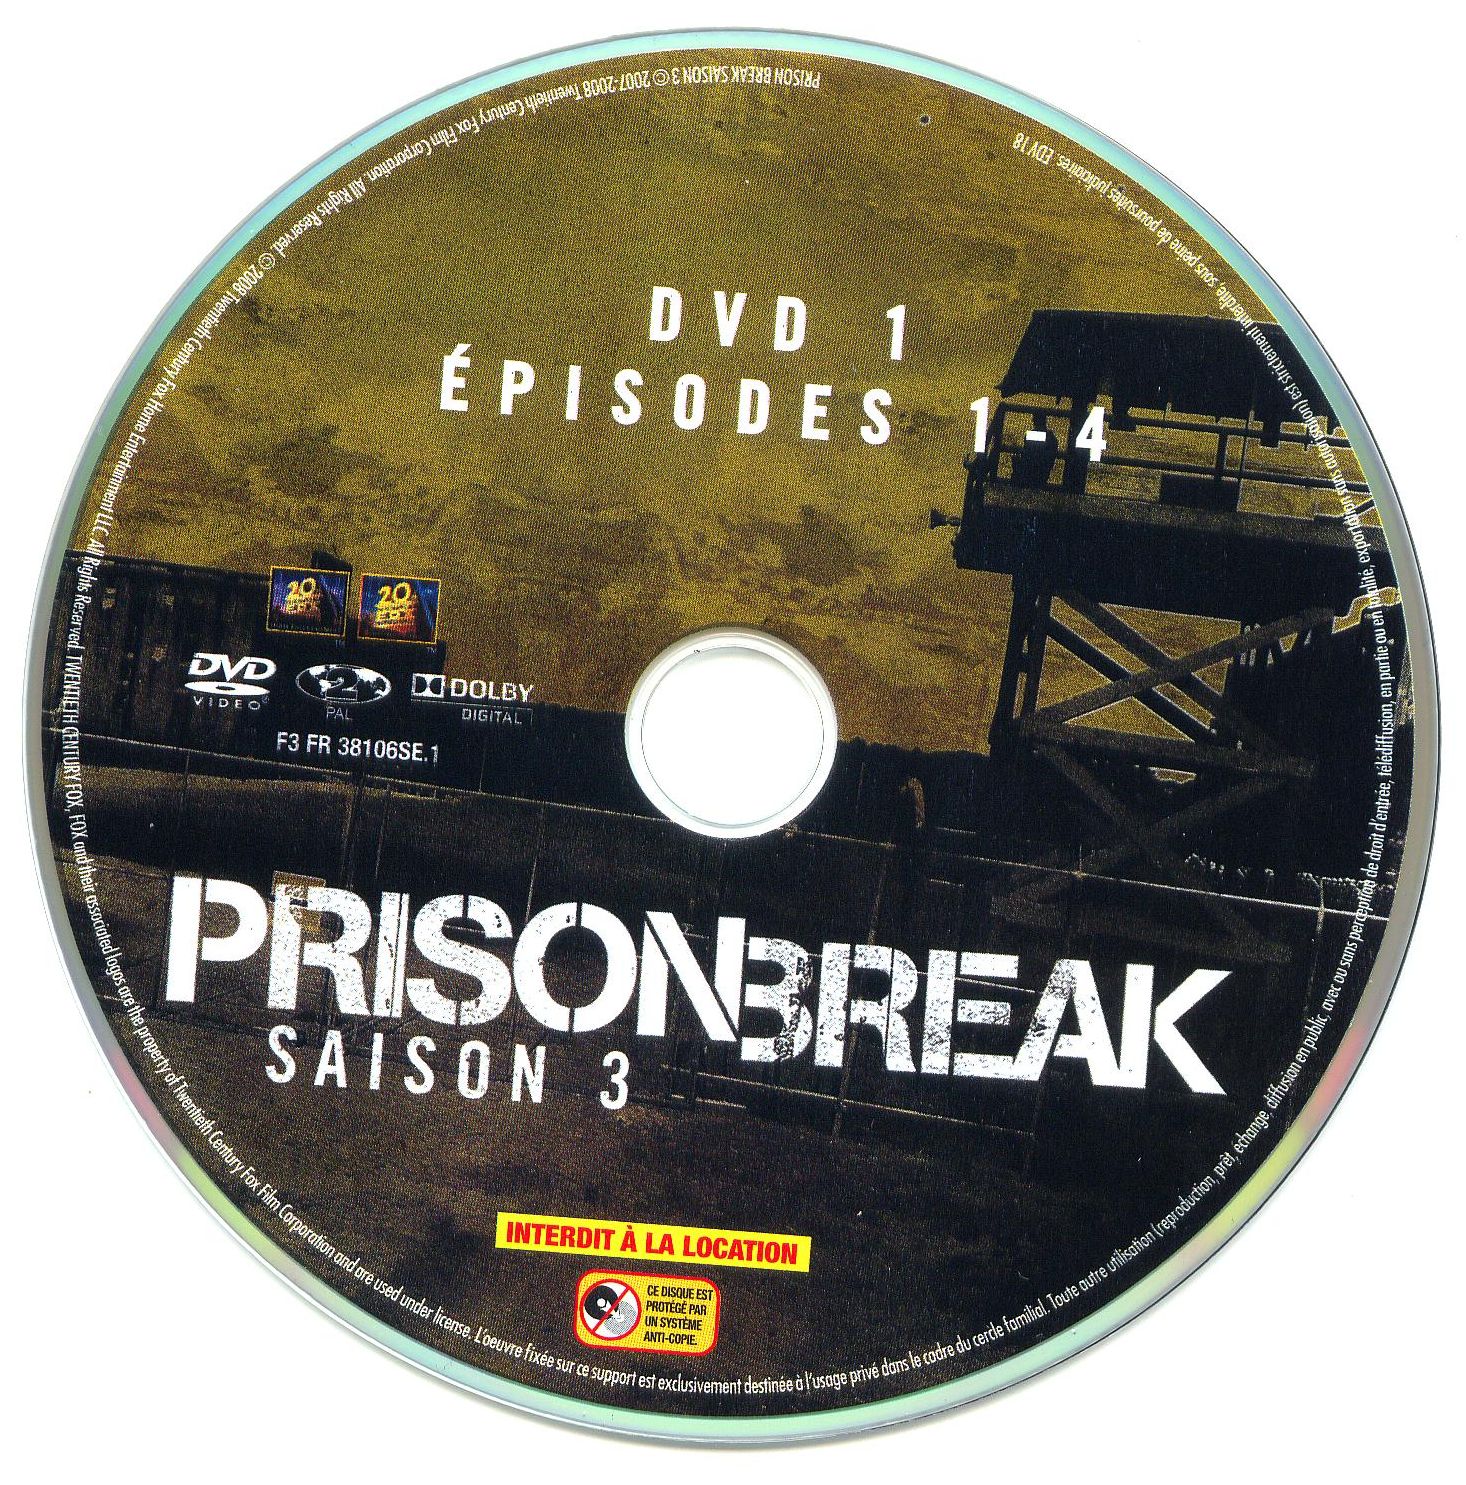 Prison break Saison 3 DVD 1